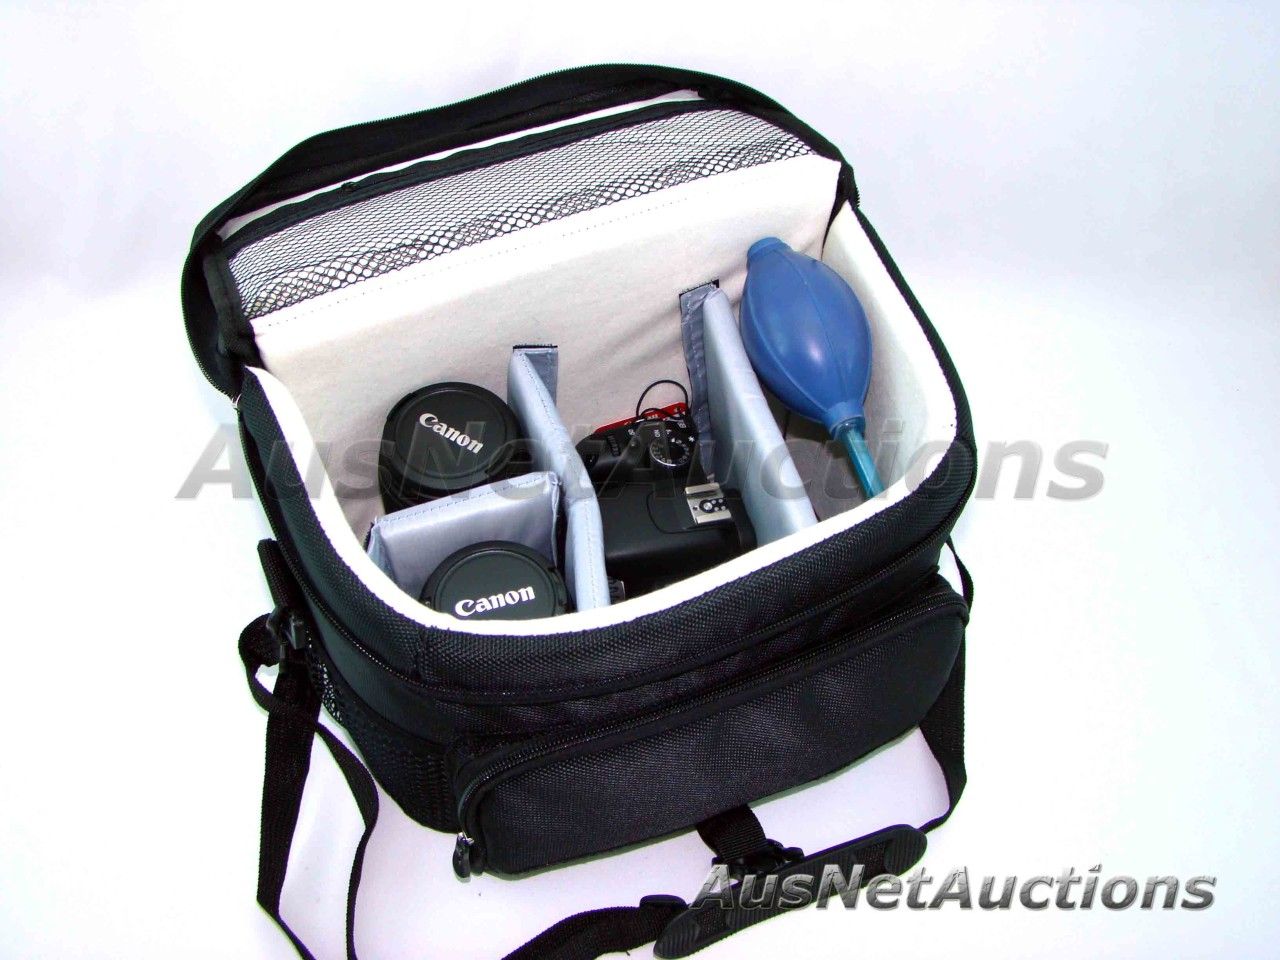 Camera Lens Bag Carry Case for Canon EOS 50D 550D 60D 500D 600D 7D 5D 